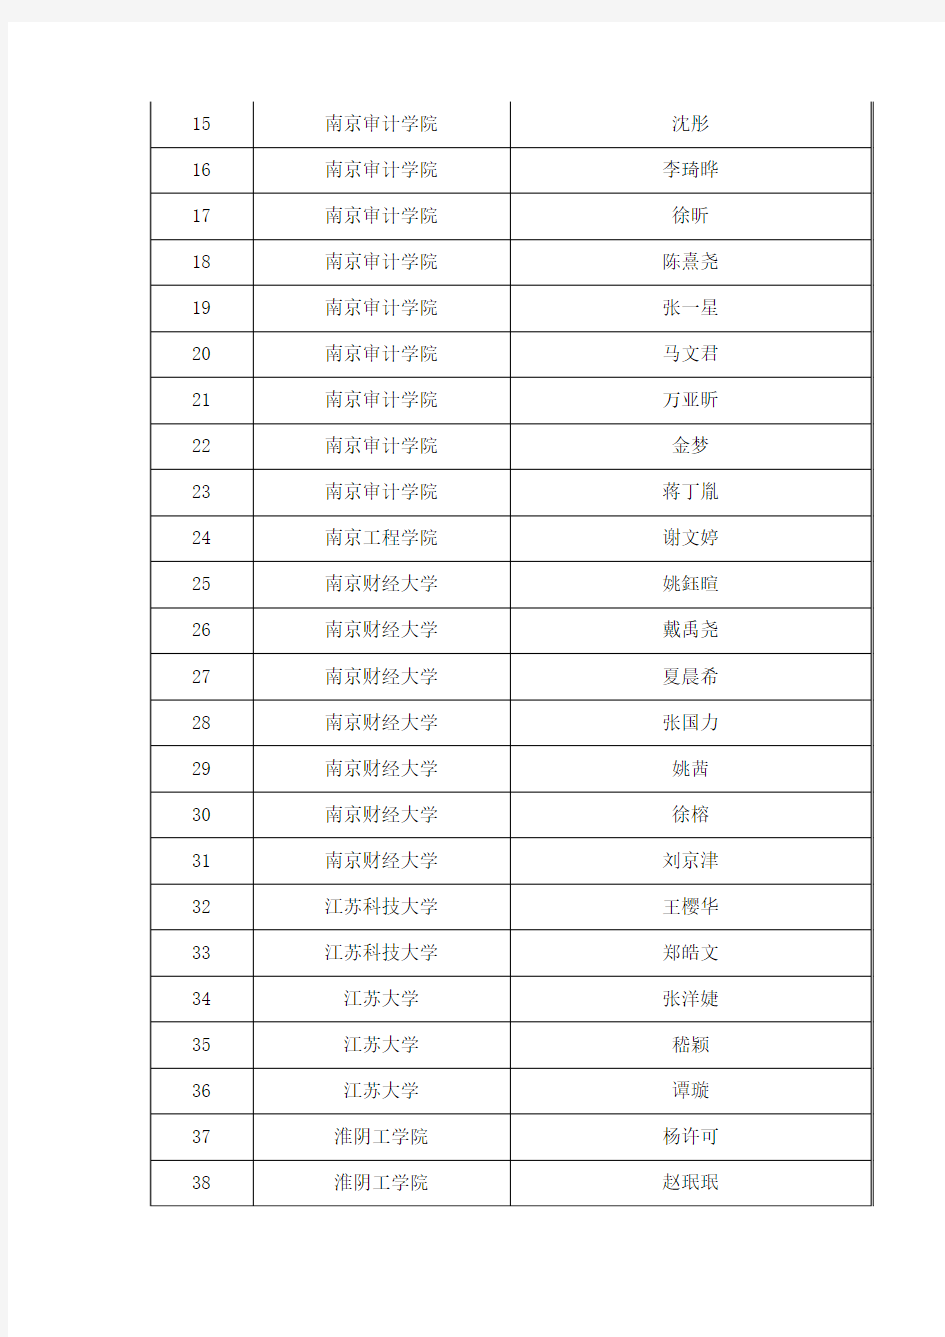 2013年江苏高校学生境外学习政府奖学金项目录取名单